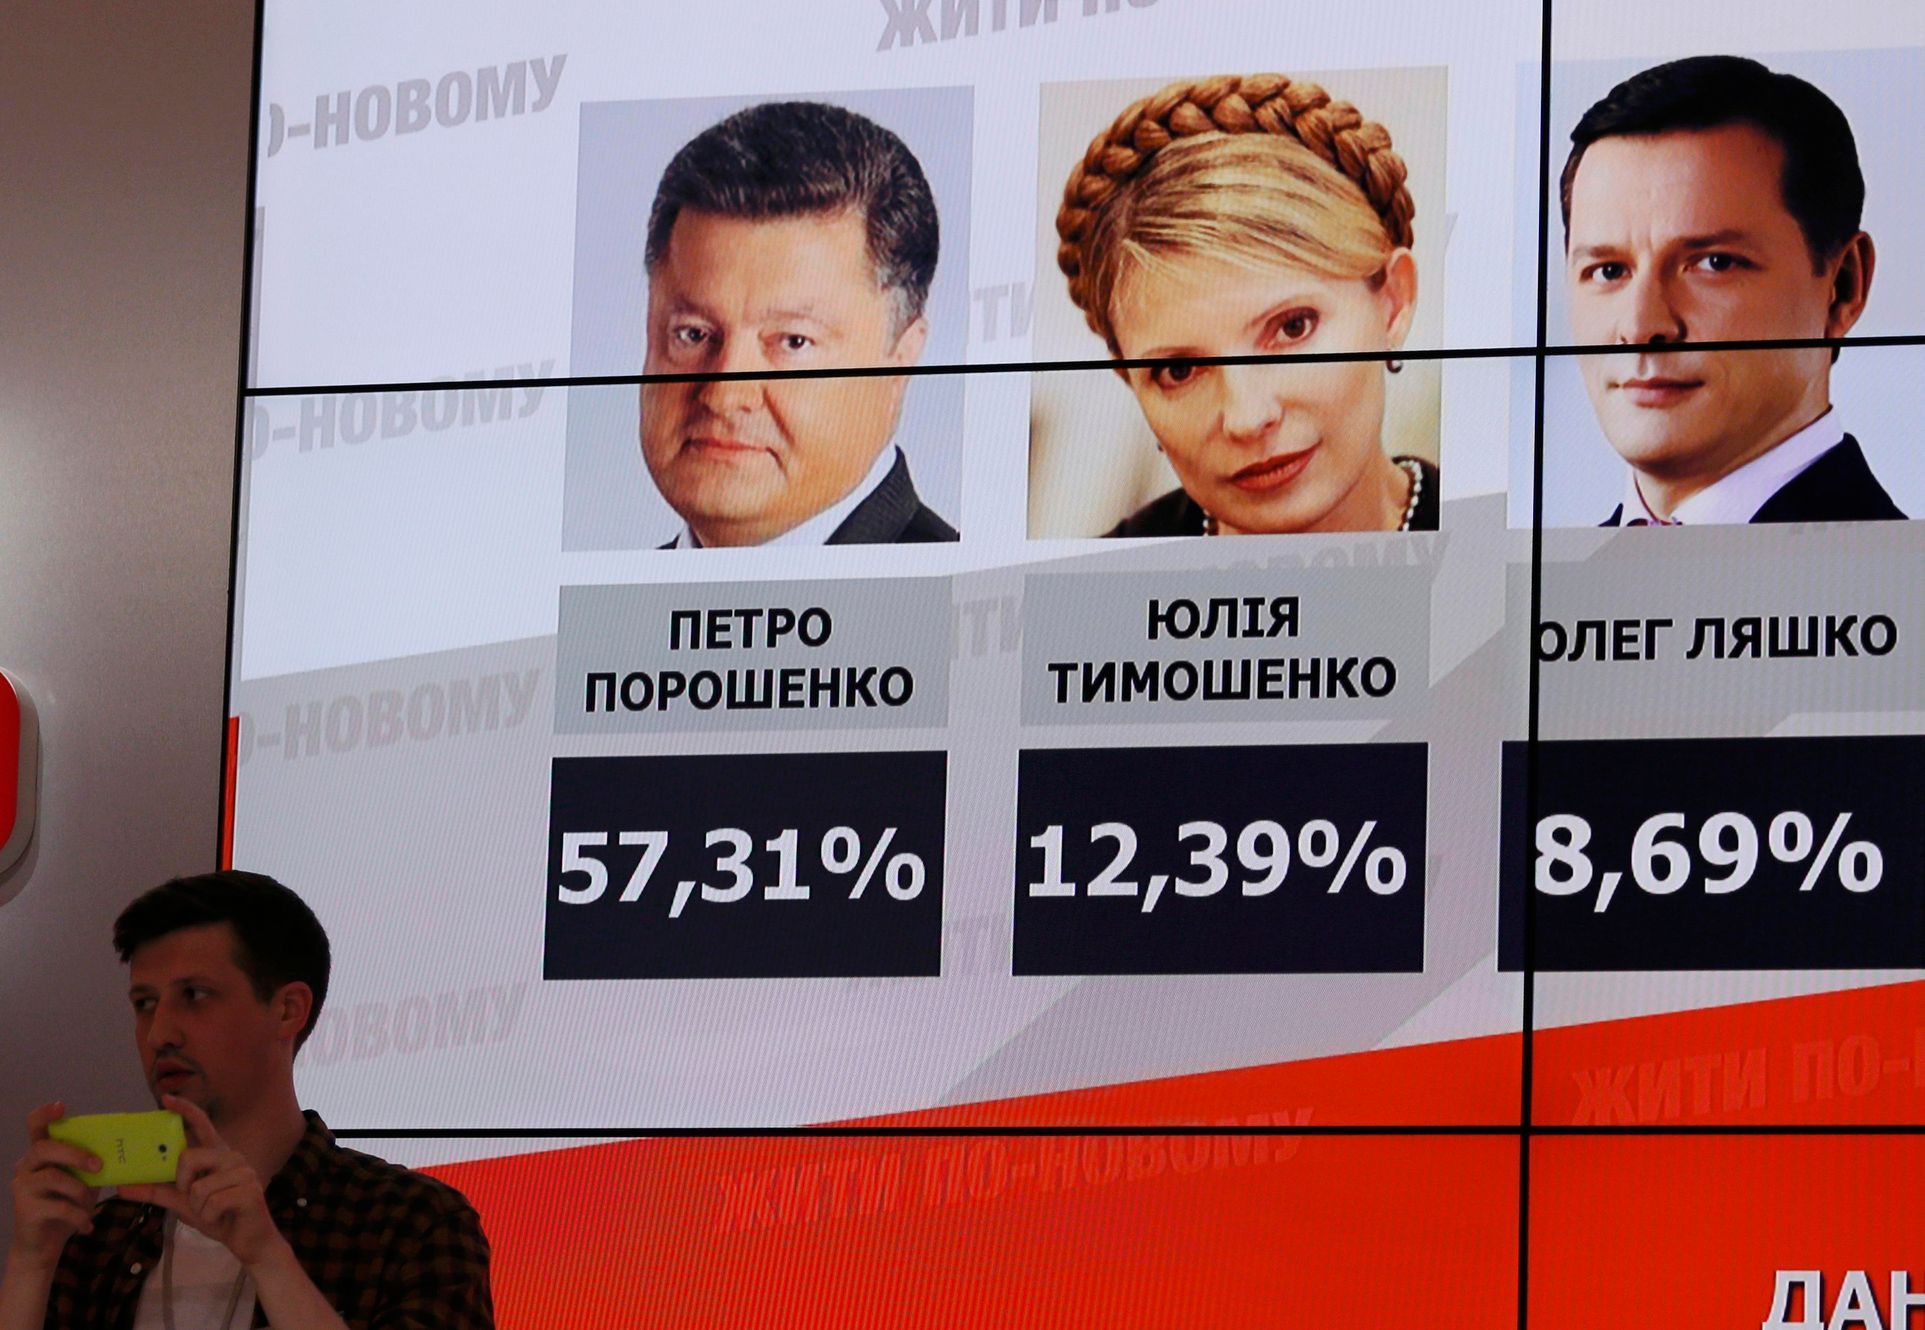 Tabule s odhady výsledků voleb na Ukrajině.